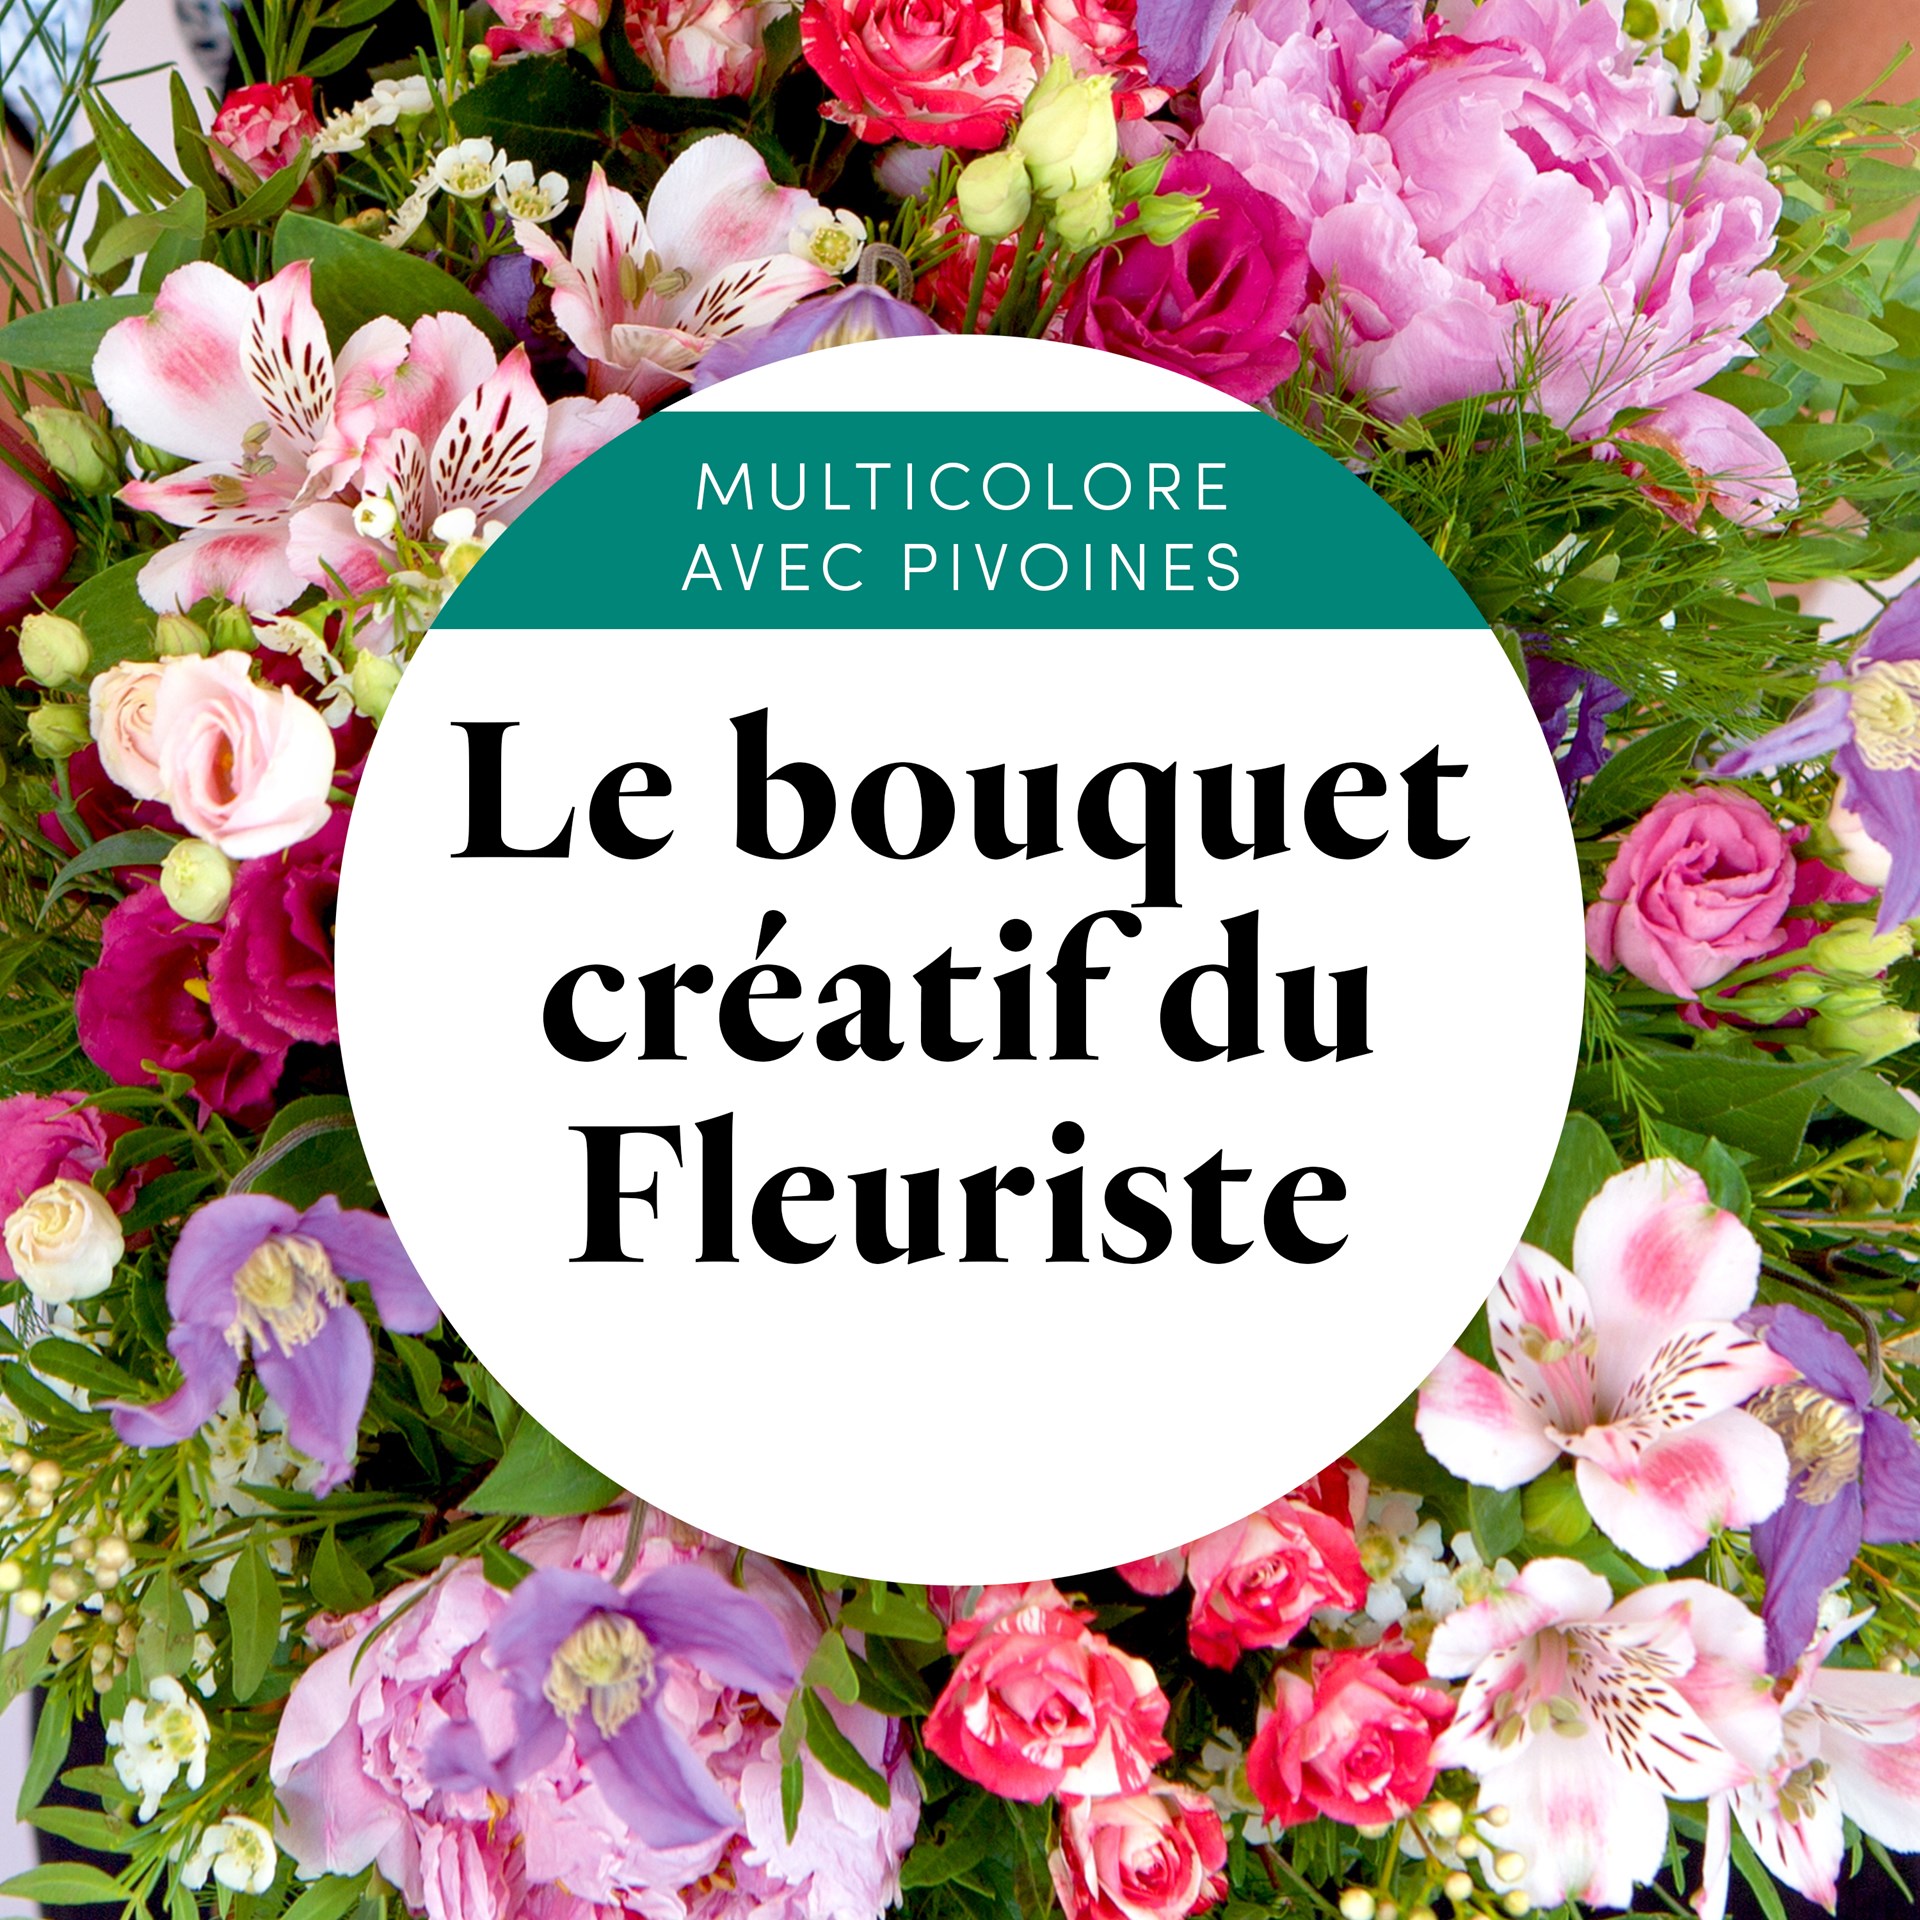 product image for Bouquet creatif du fleuriste multicolore avec pivoines